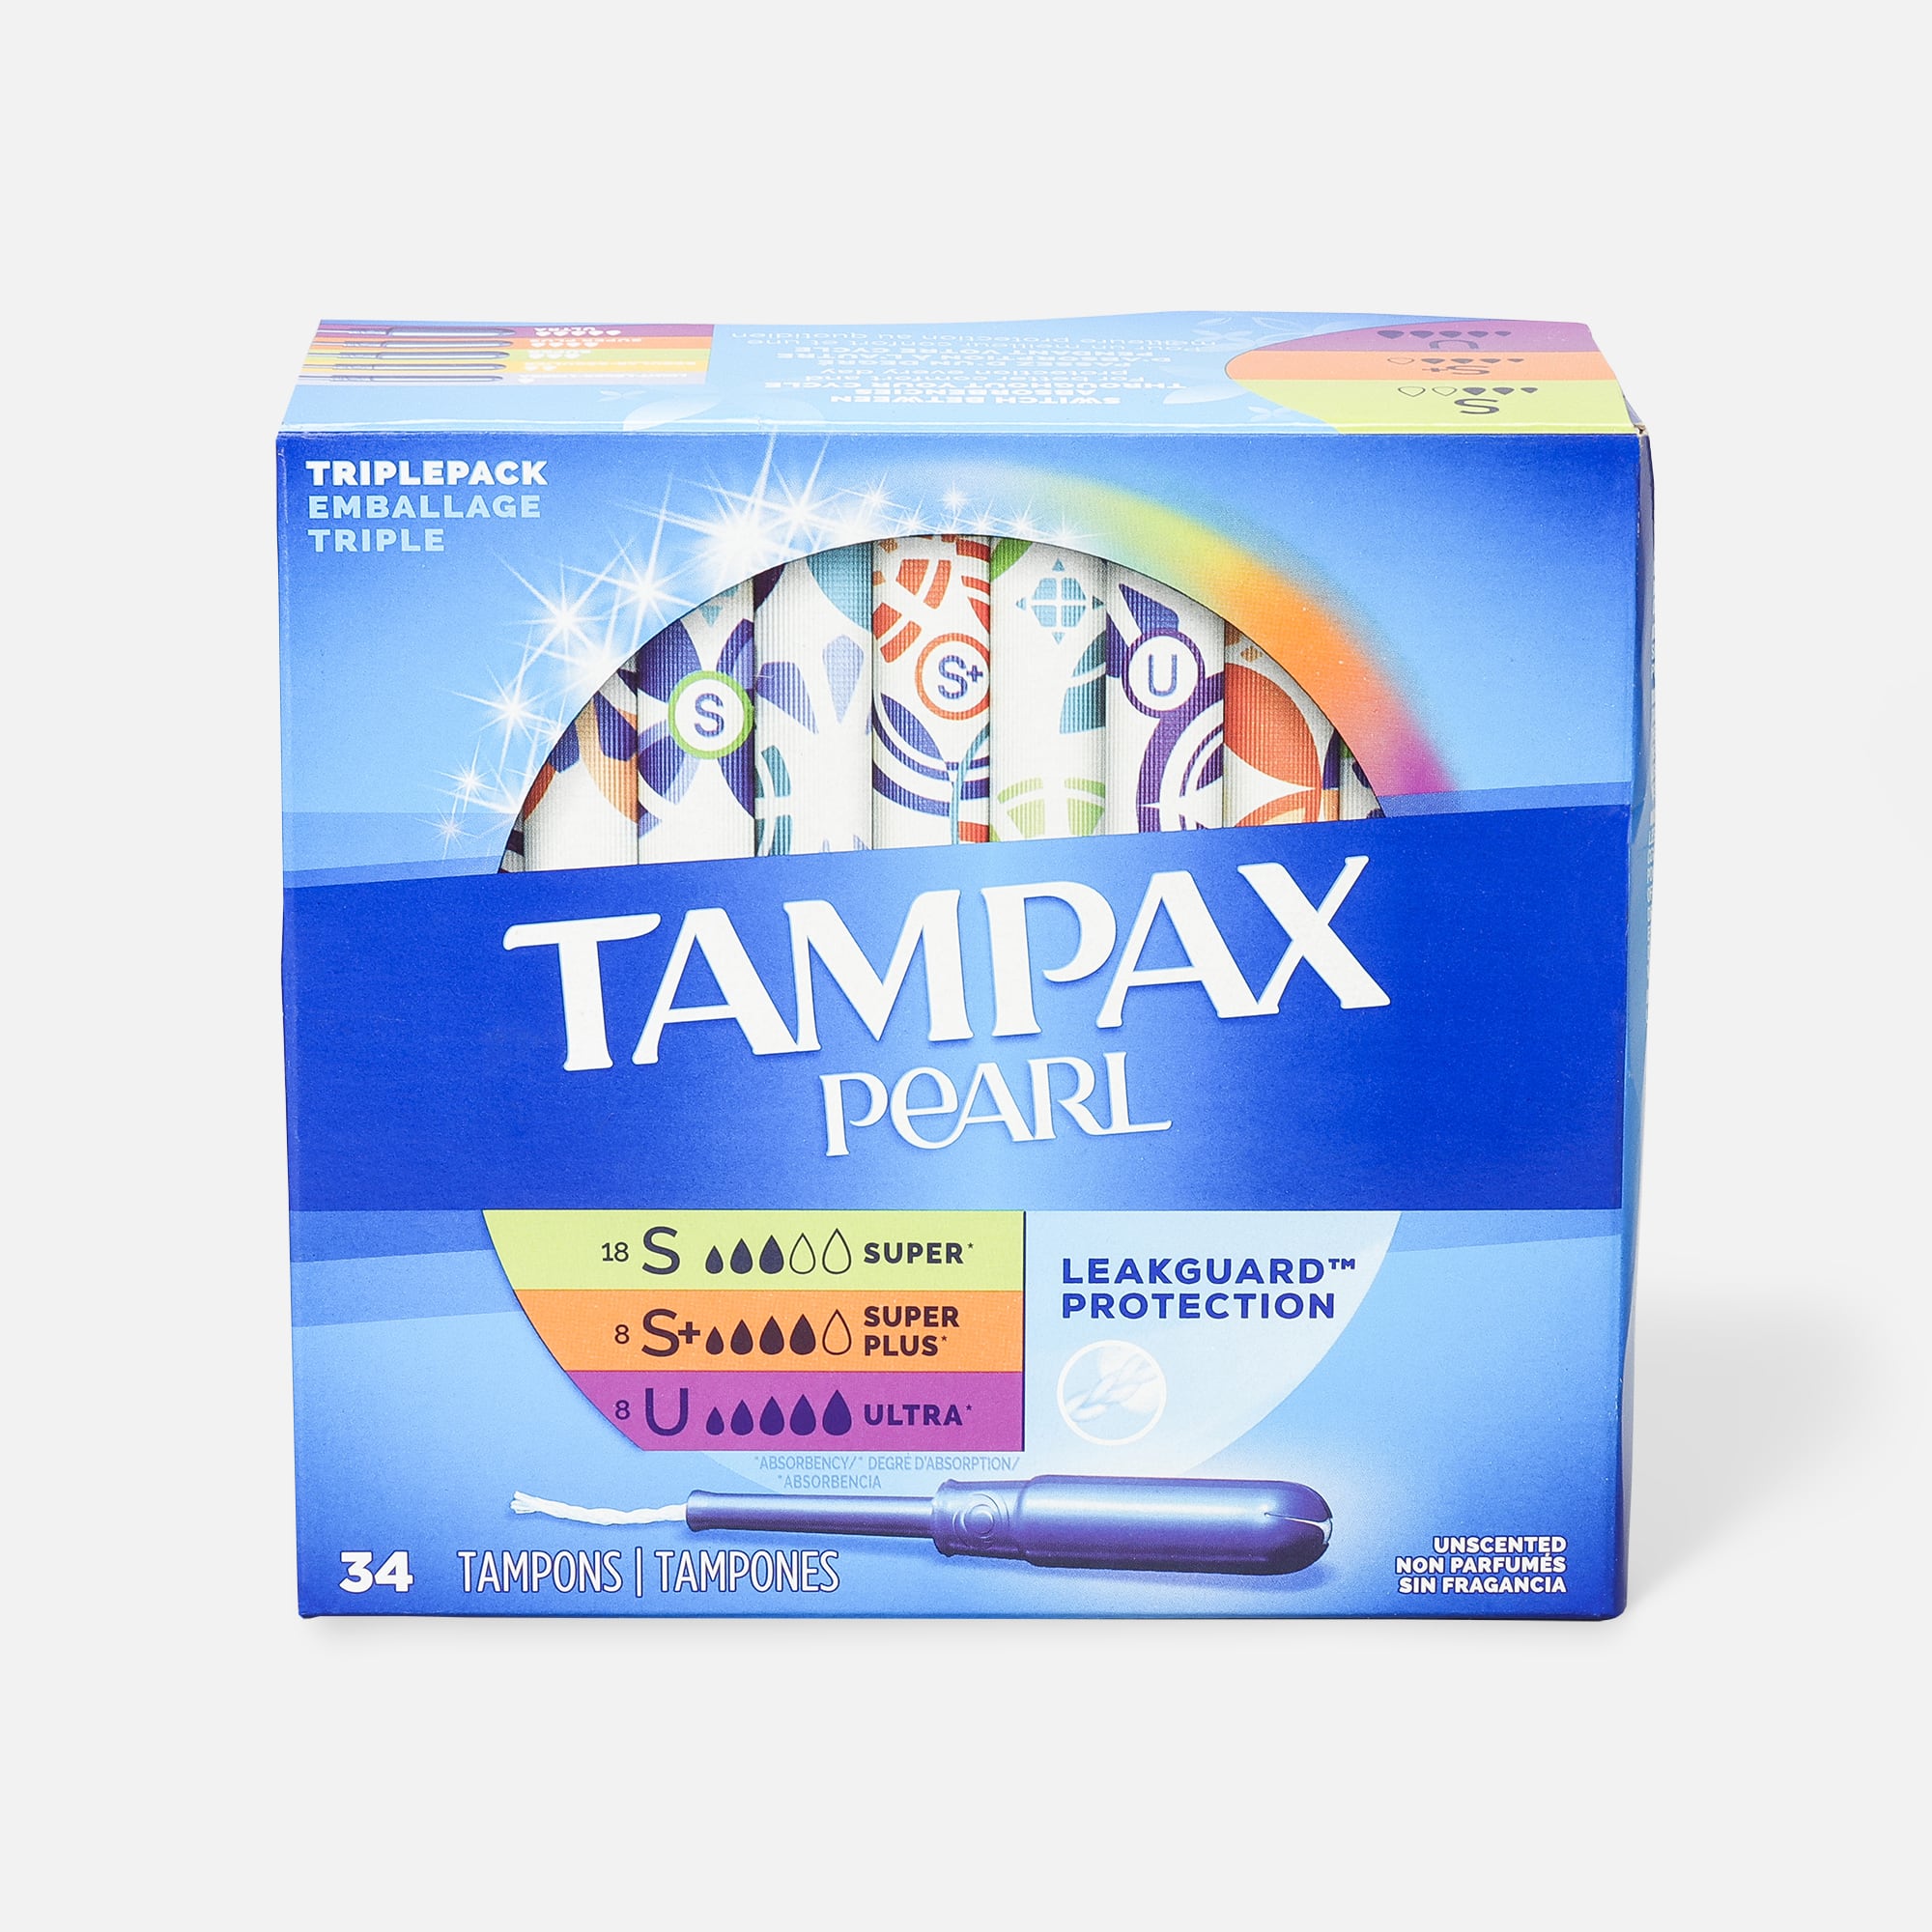 Tampax Pearl Triple Pack Tampons Regular Super & Super Plus